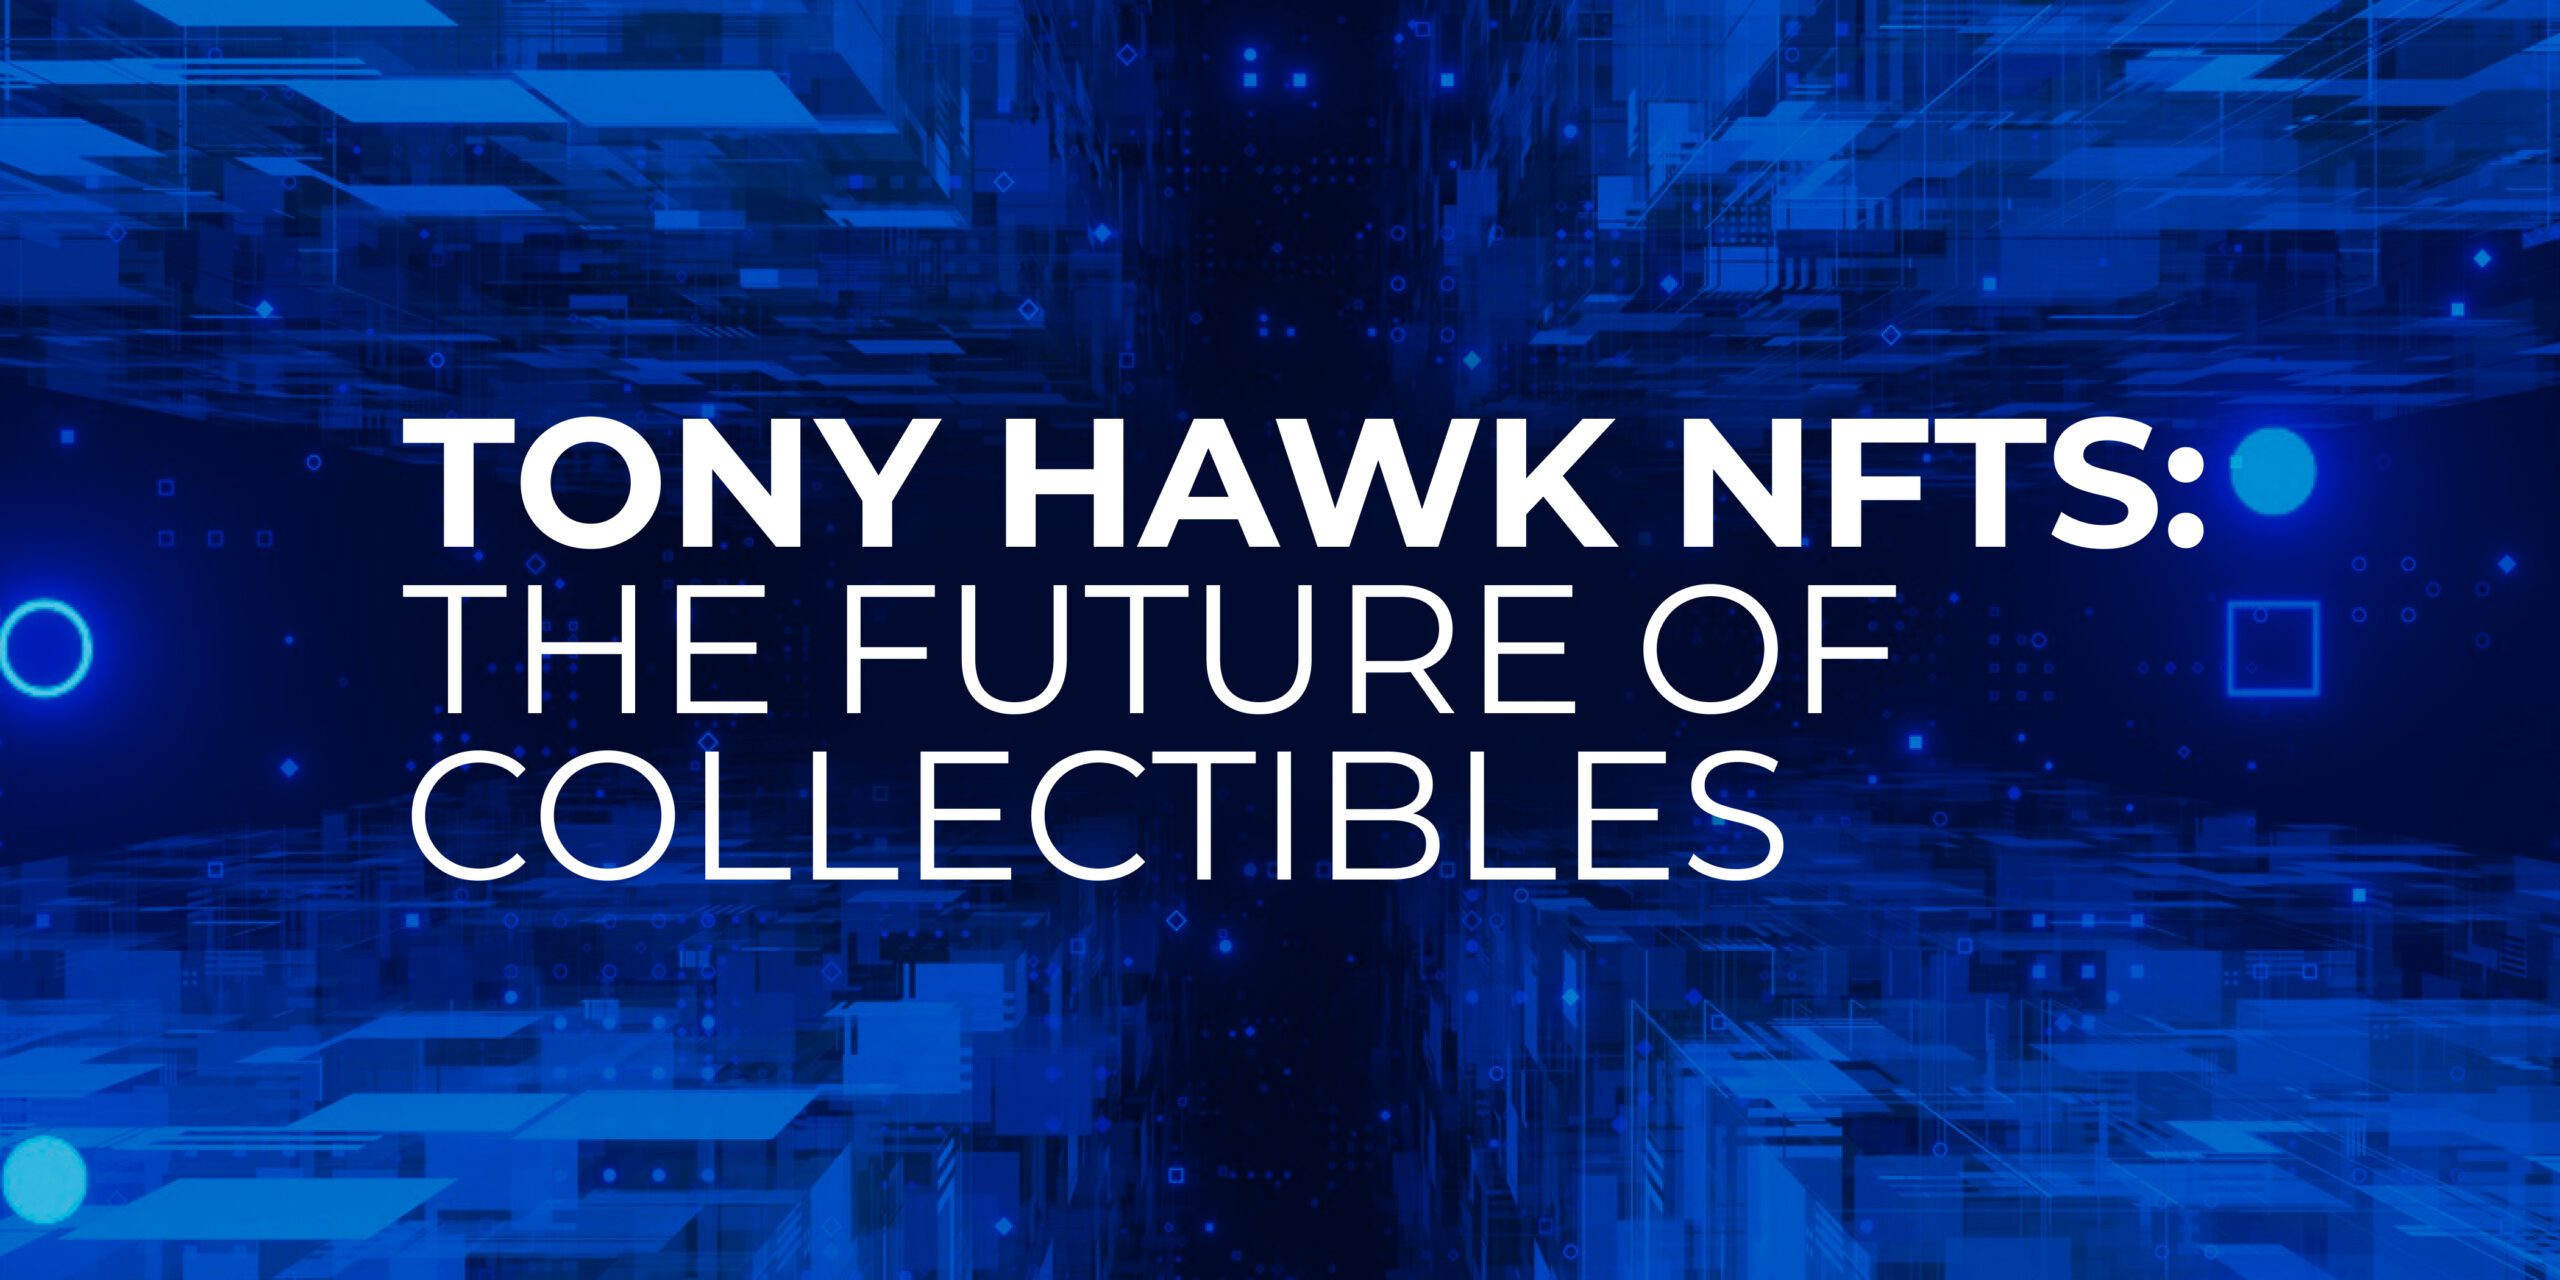 Tony Hawk NFT